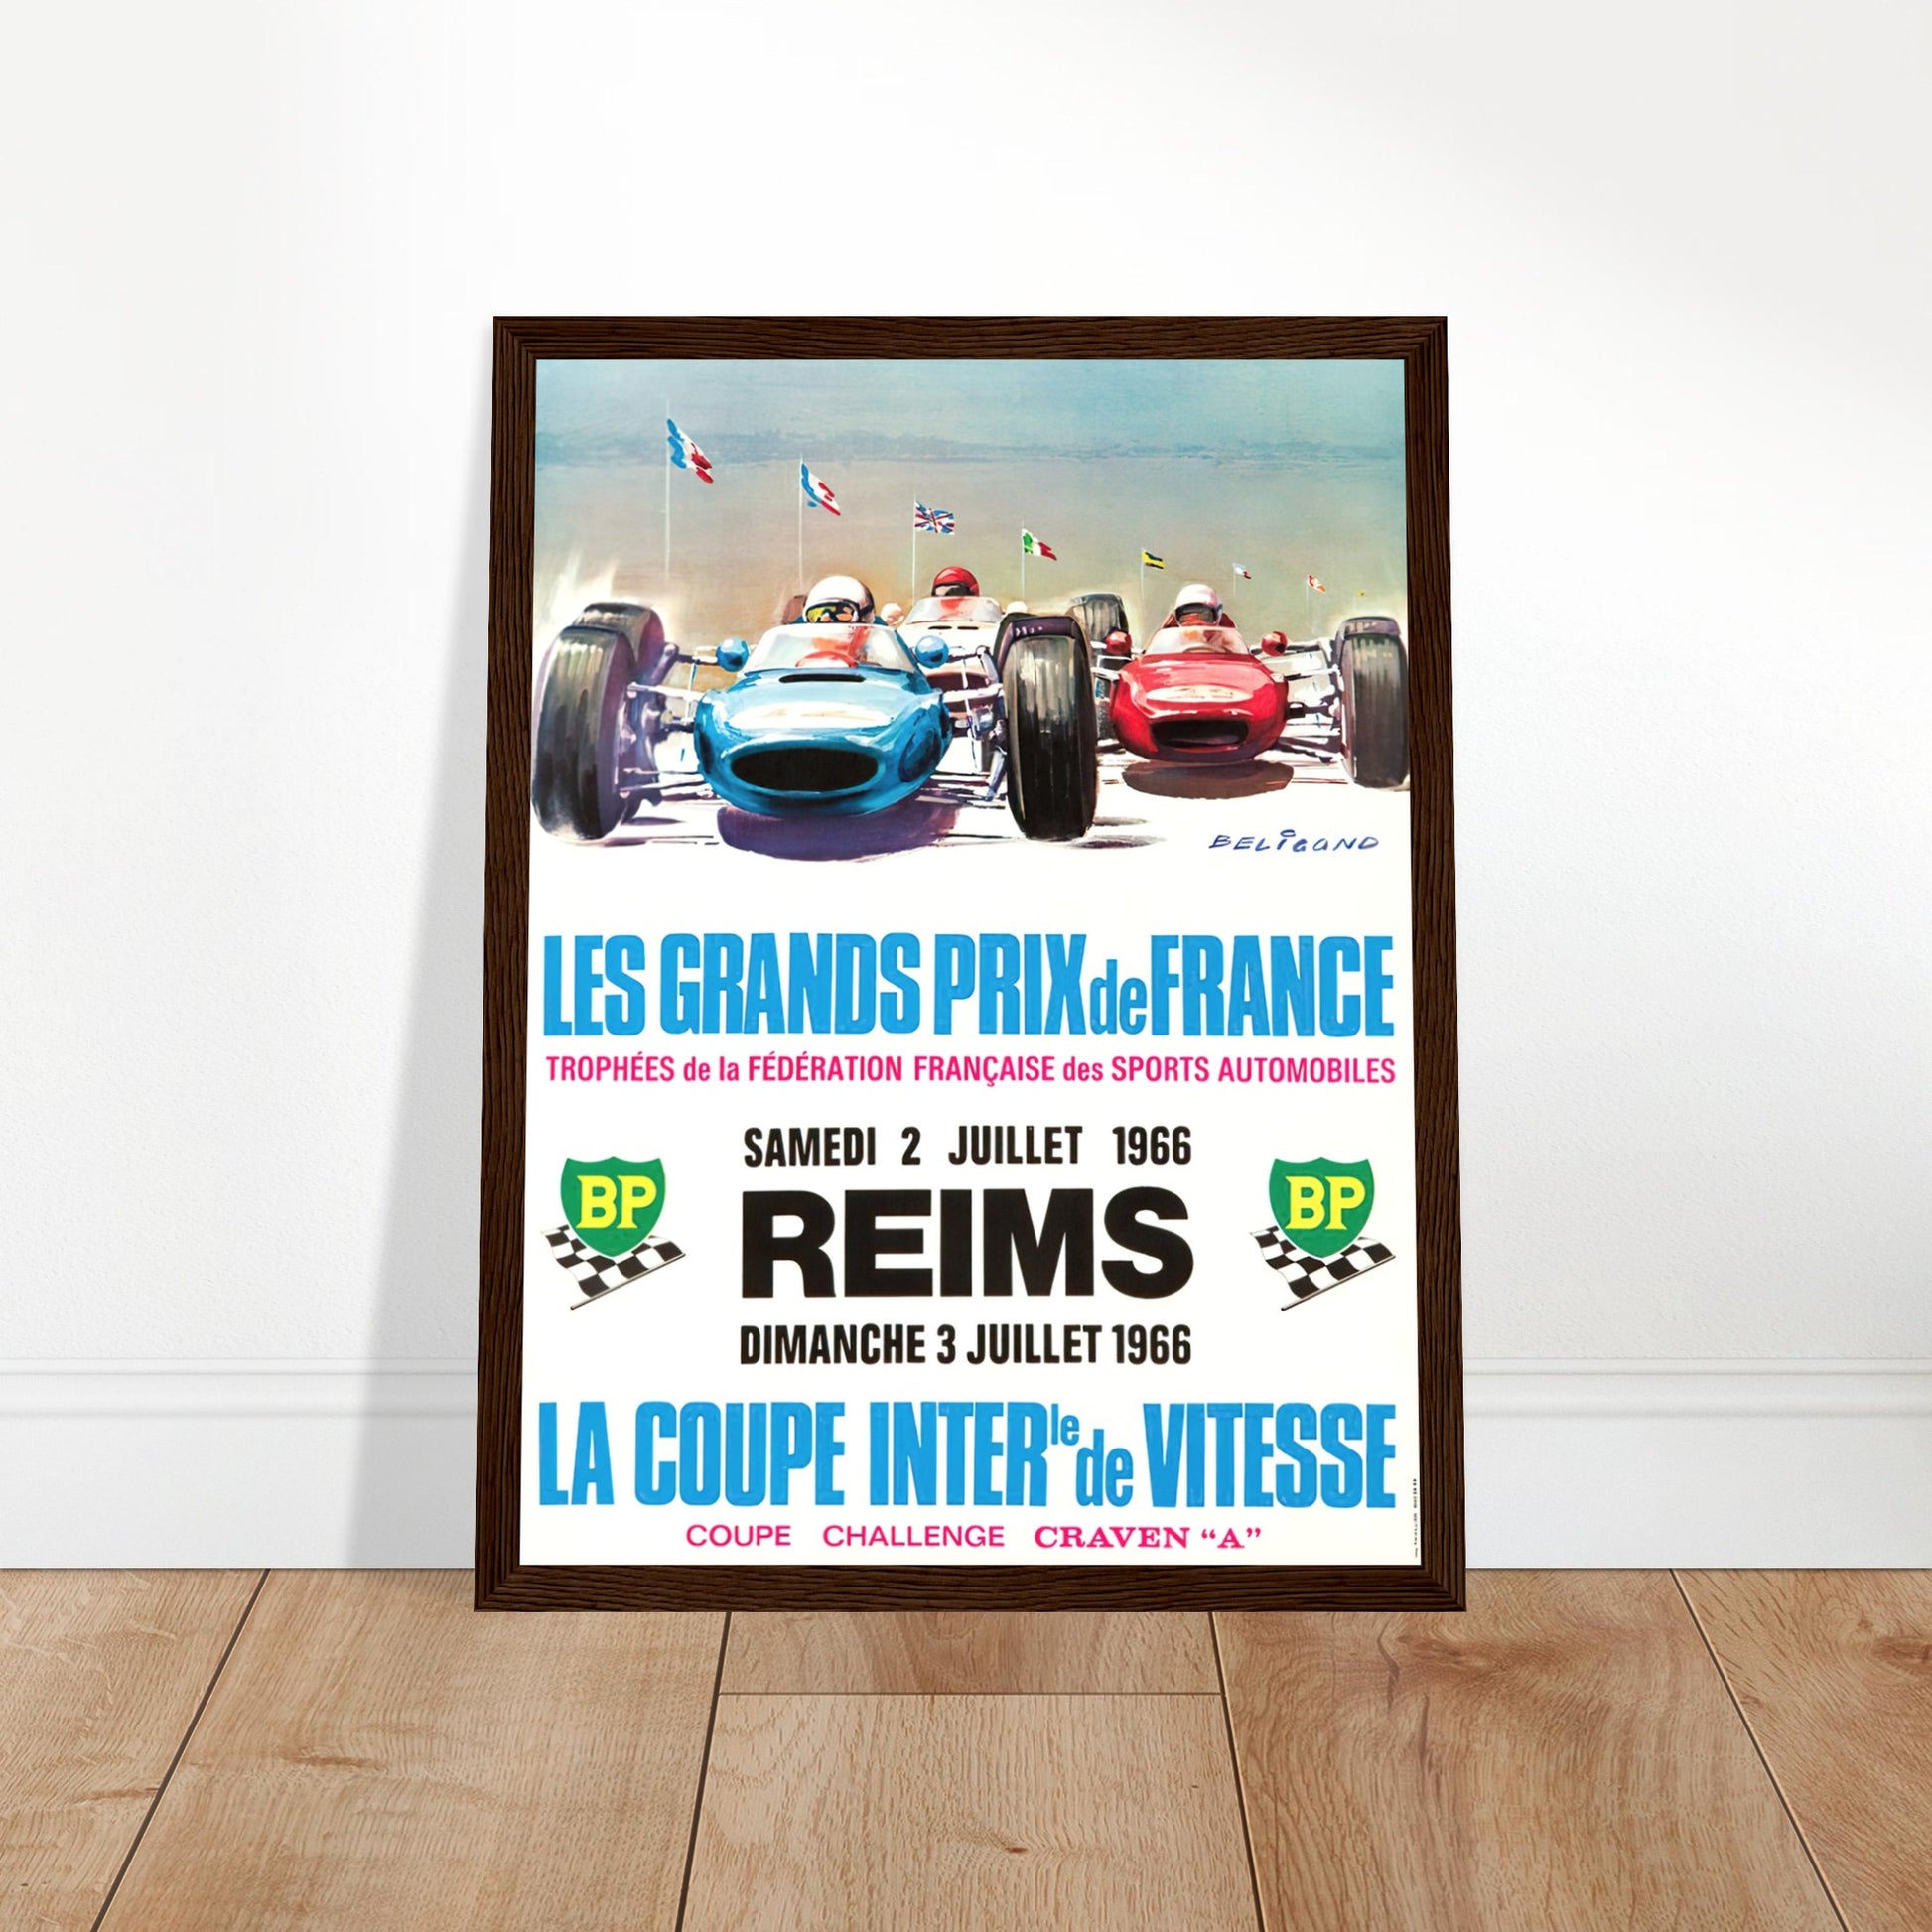 Reims Vintage Poster Reprint on Premium Matte Paper - Posterify